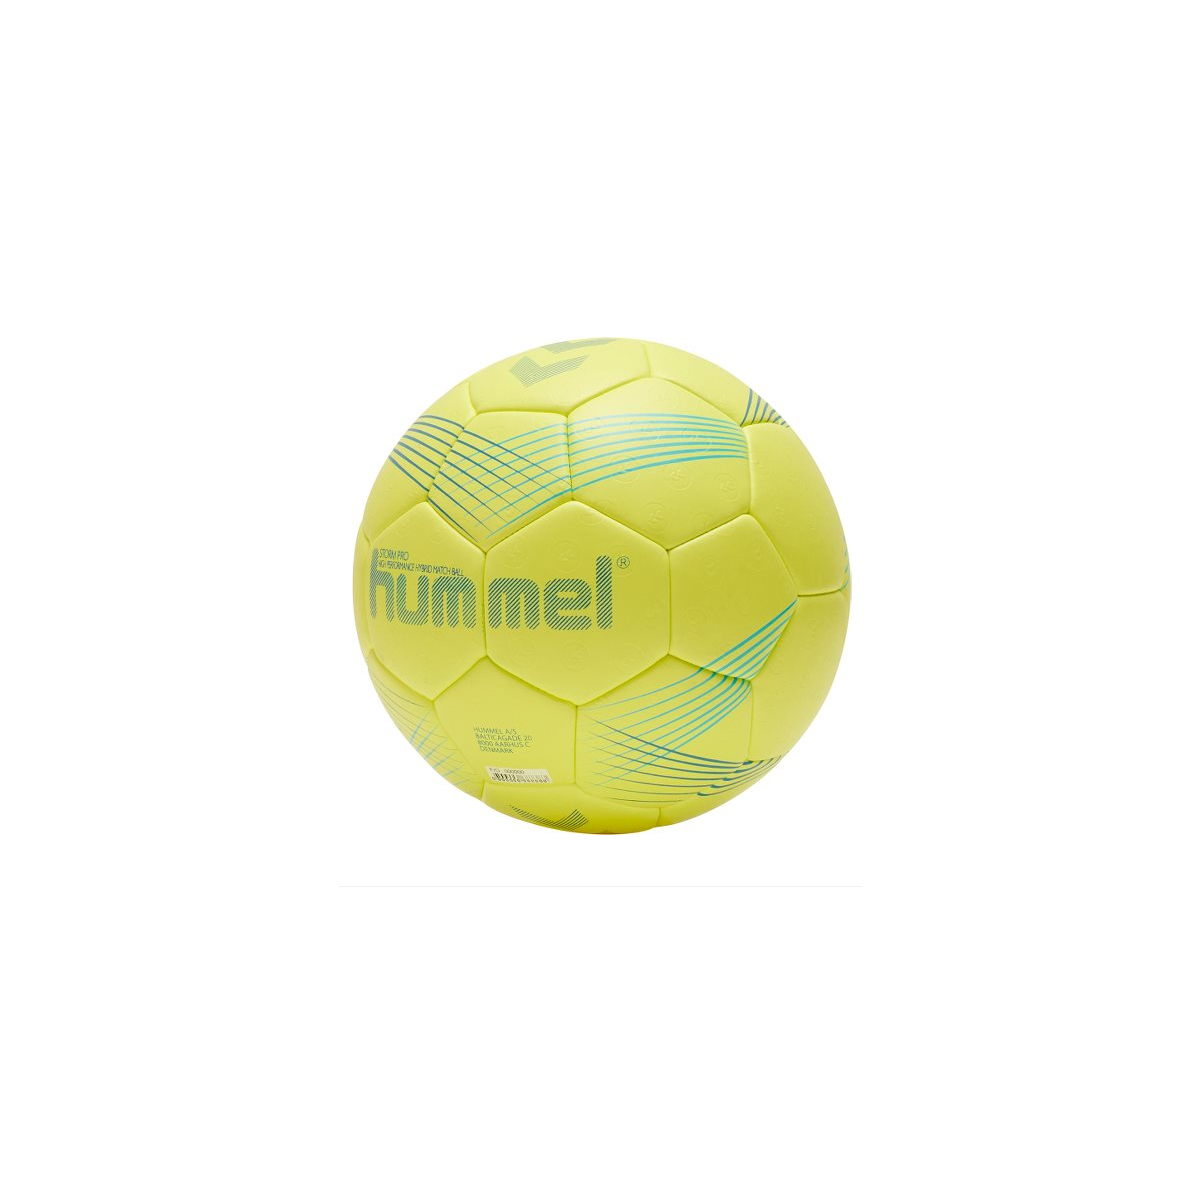 Hummel Storm Pro Handball, 75.00